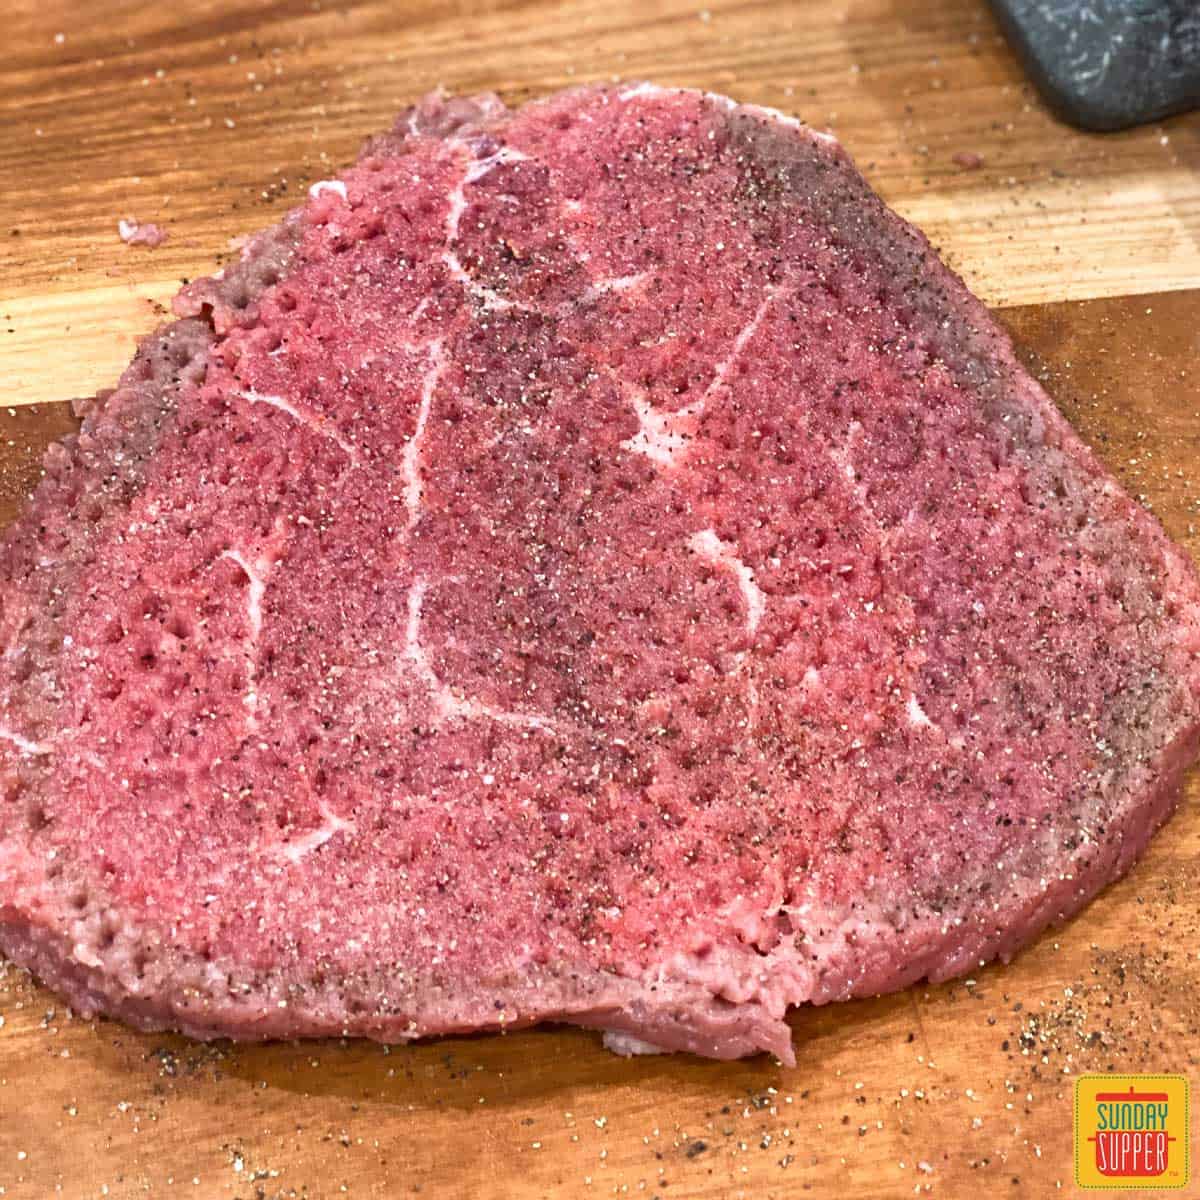 Tenderized steak on a cutting board